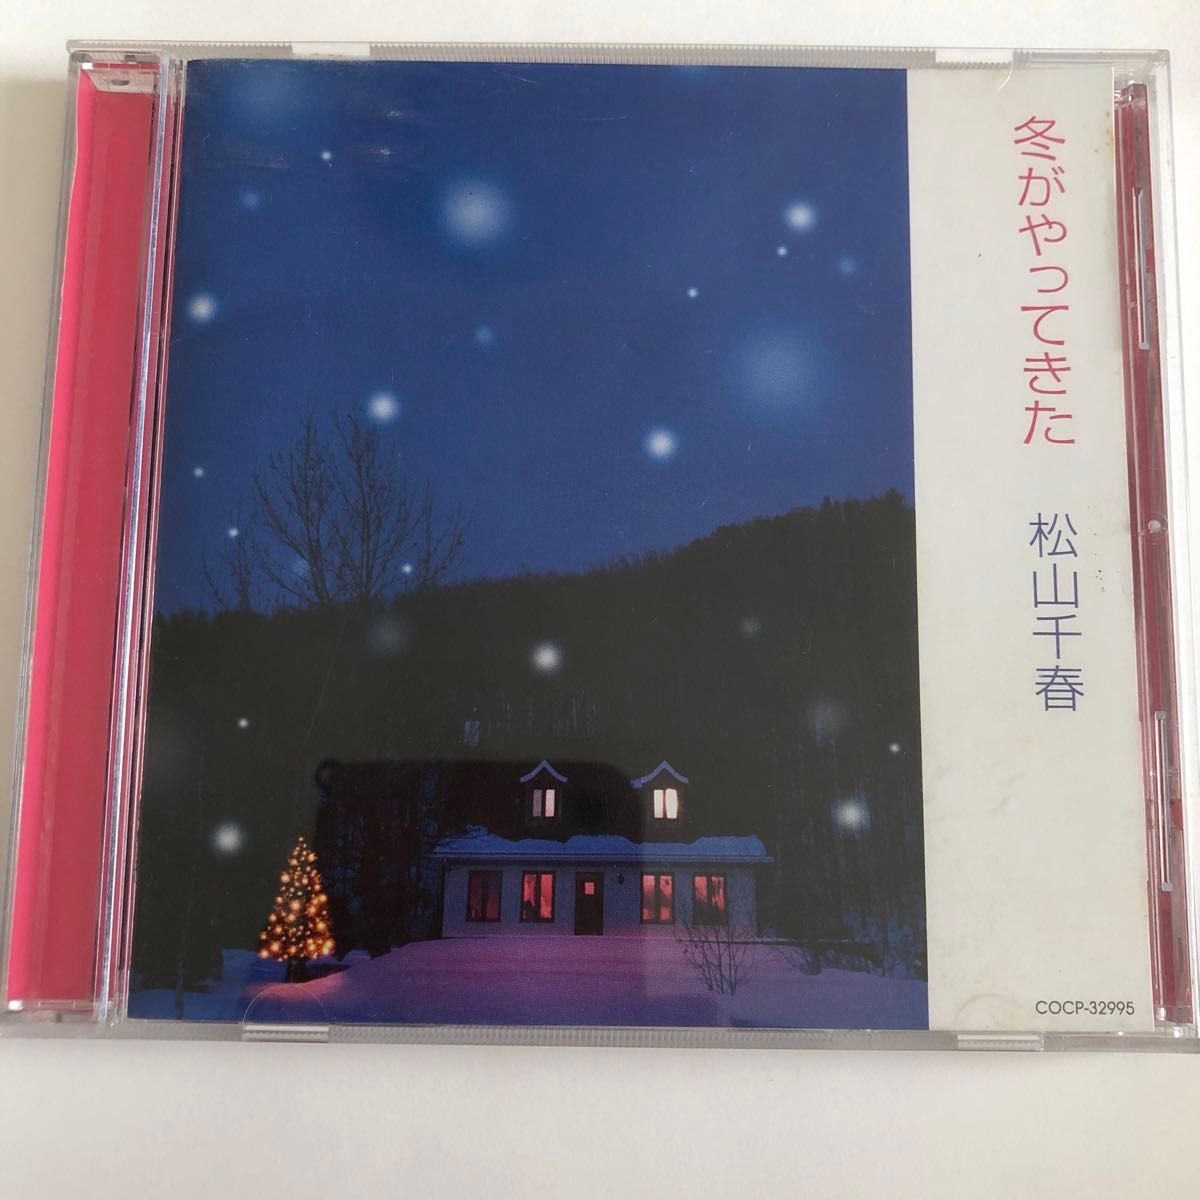 『風光る』『冬がやってきた』松山千春 CD アルバム album